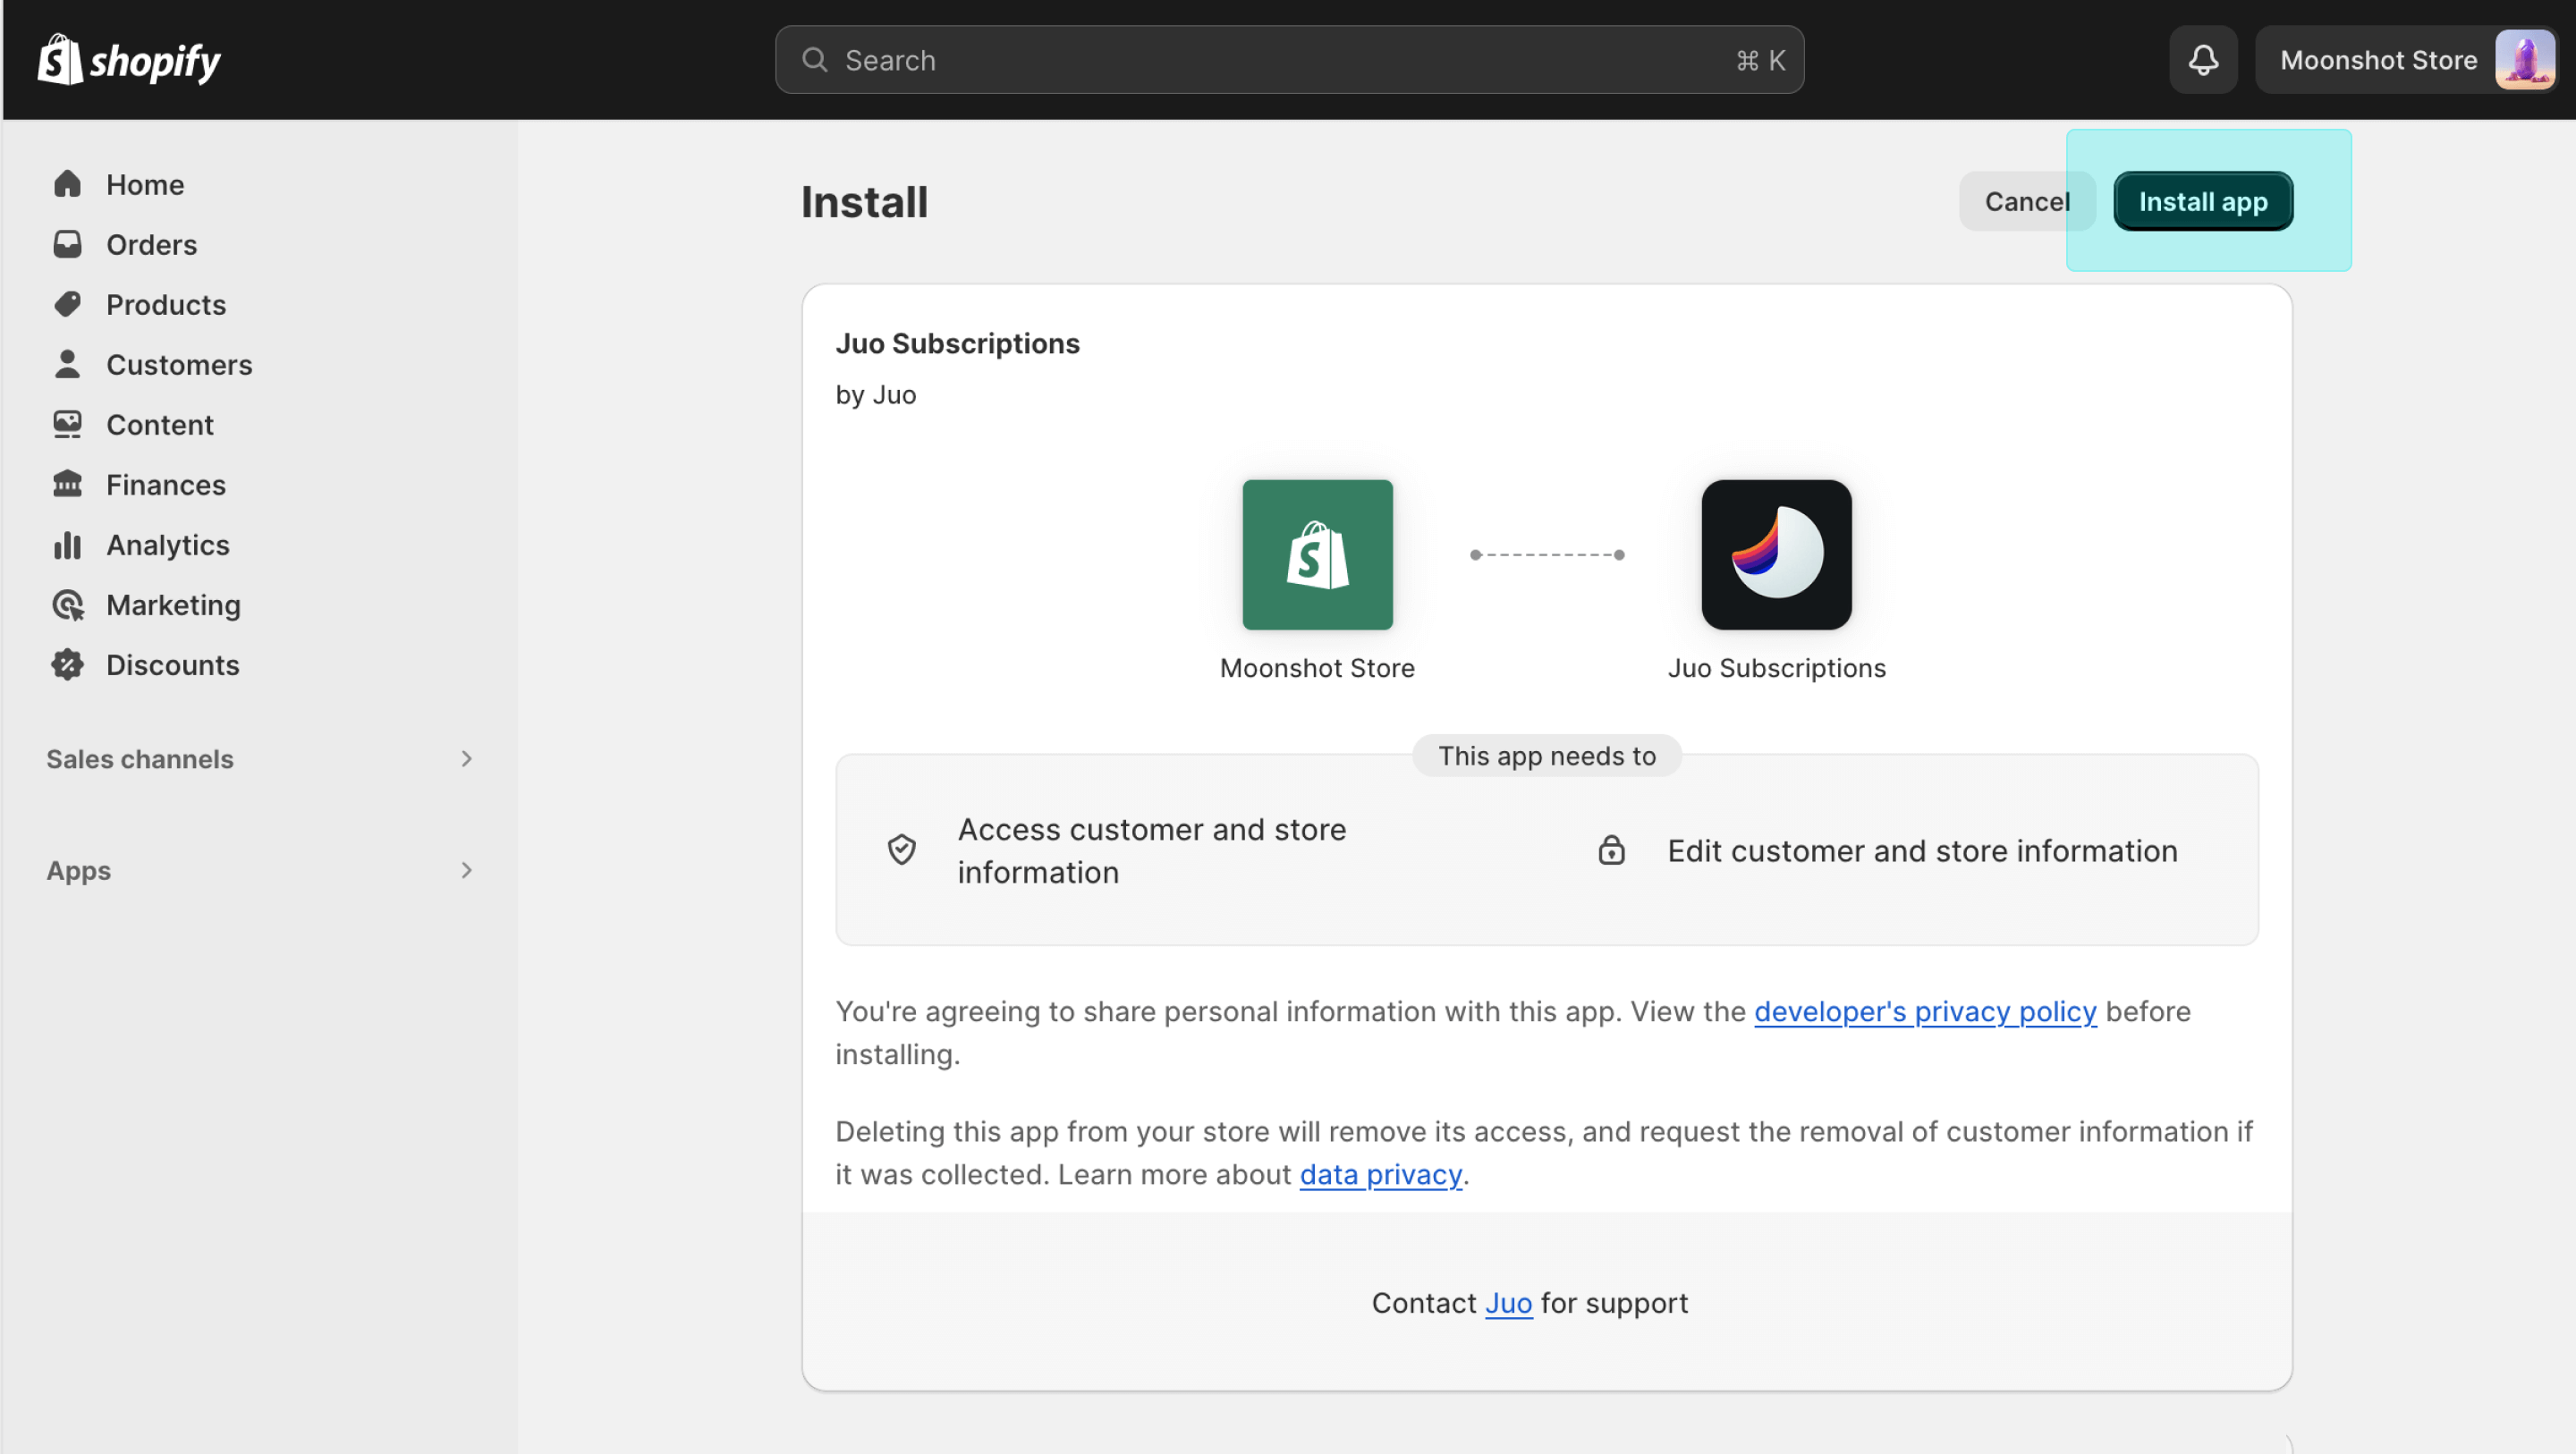 App installation - Confirmation screen